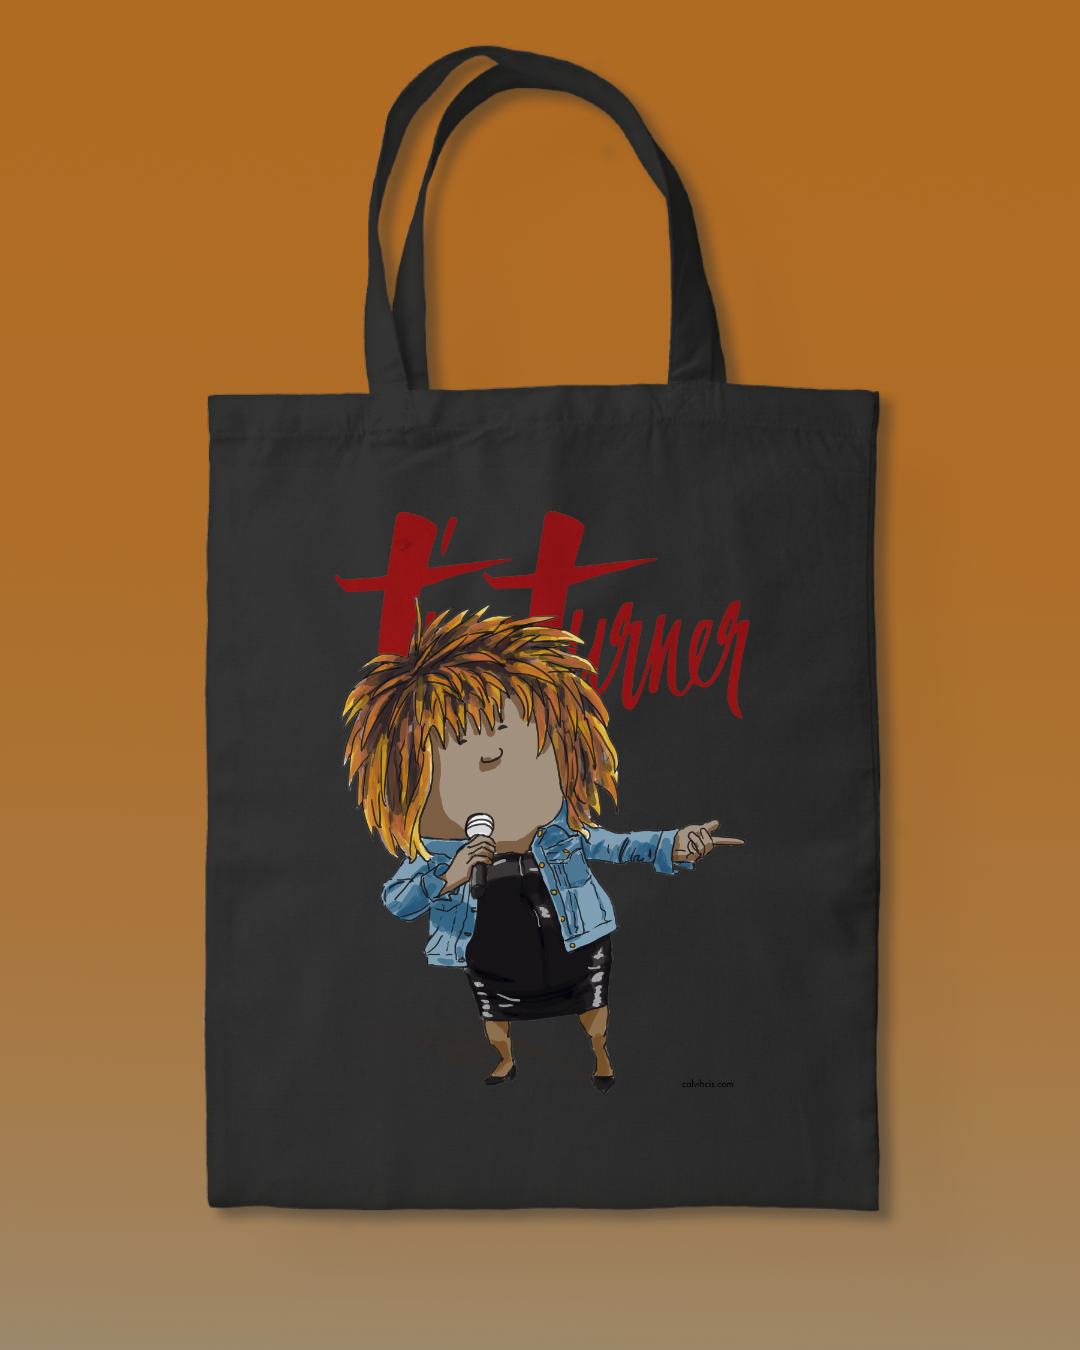 Tina Turner Tote Bag